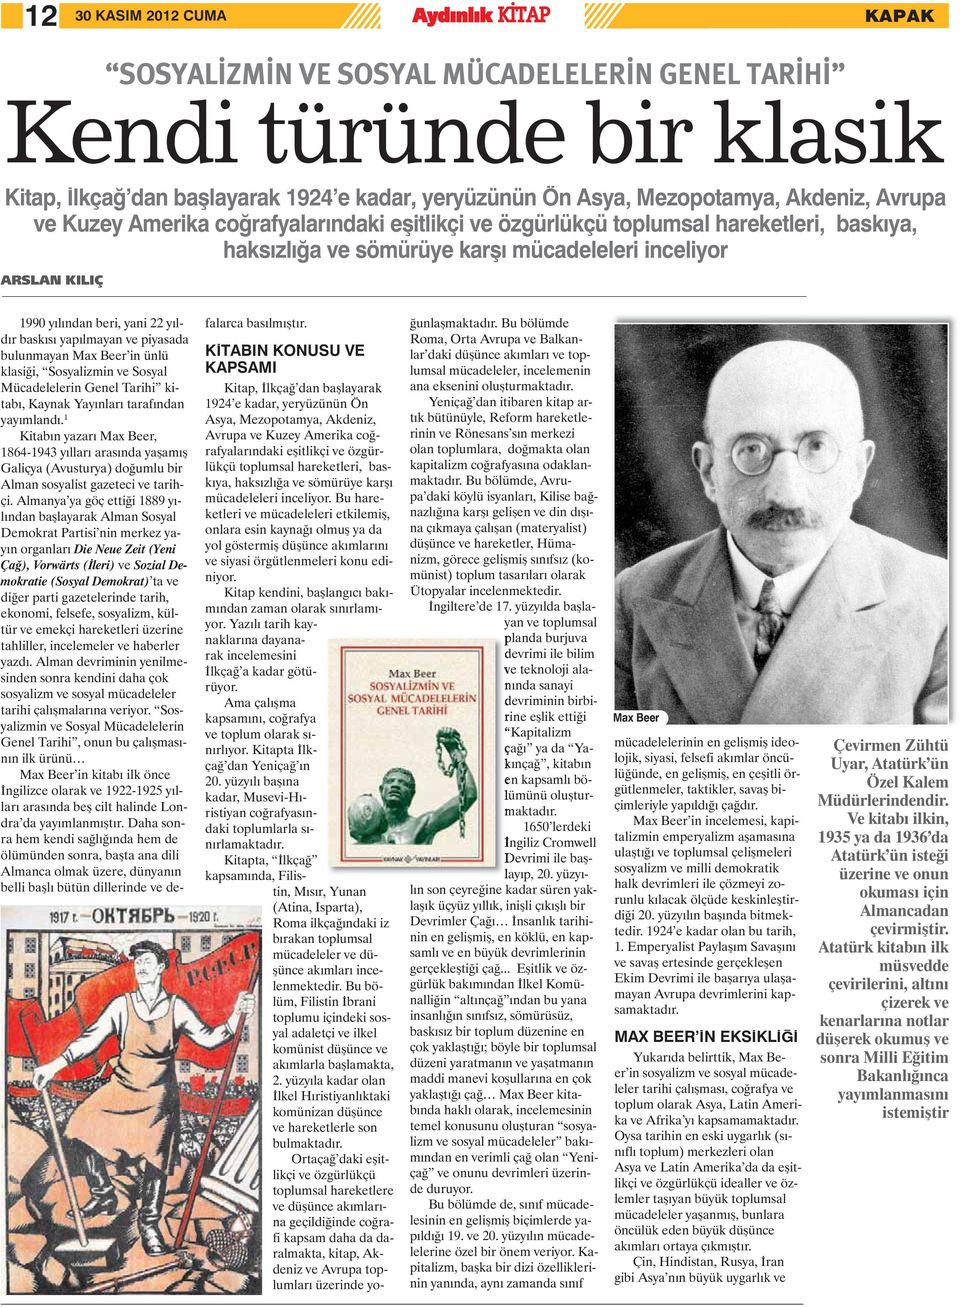 baskısı yapılmayan ve piyasada bulunmayan Max Beer in ünlü klasiği, Sosyalizmin ve Sosyal Mücadelelerin Genel Tarihi kitabı, Kaynak Yayınları tarafından yayımlandı.